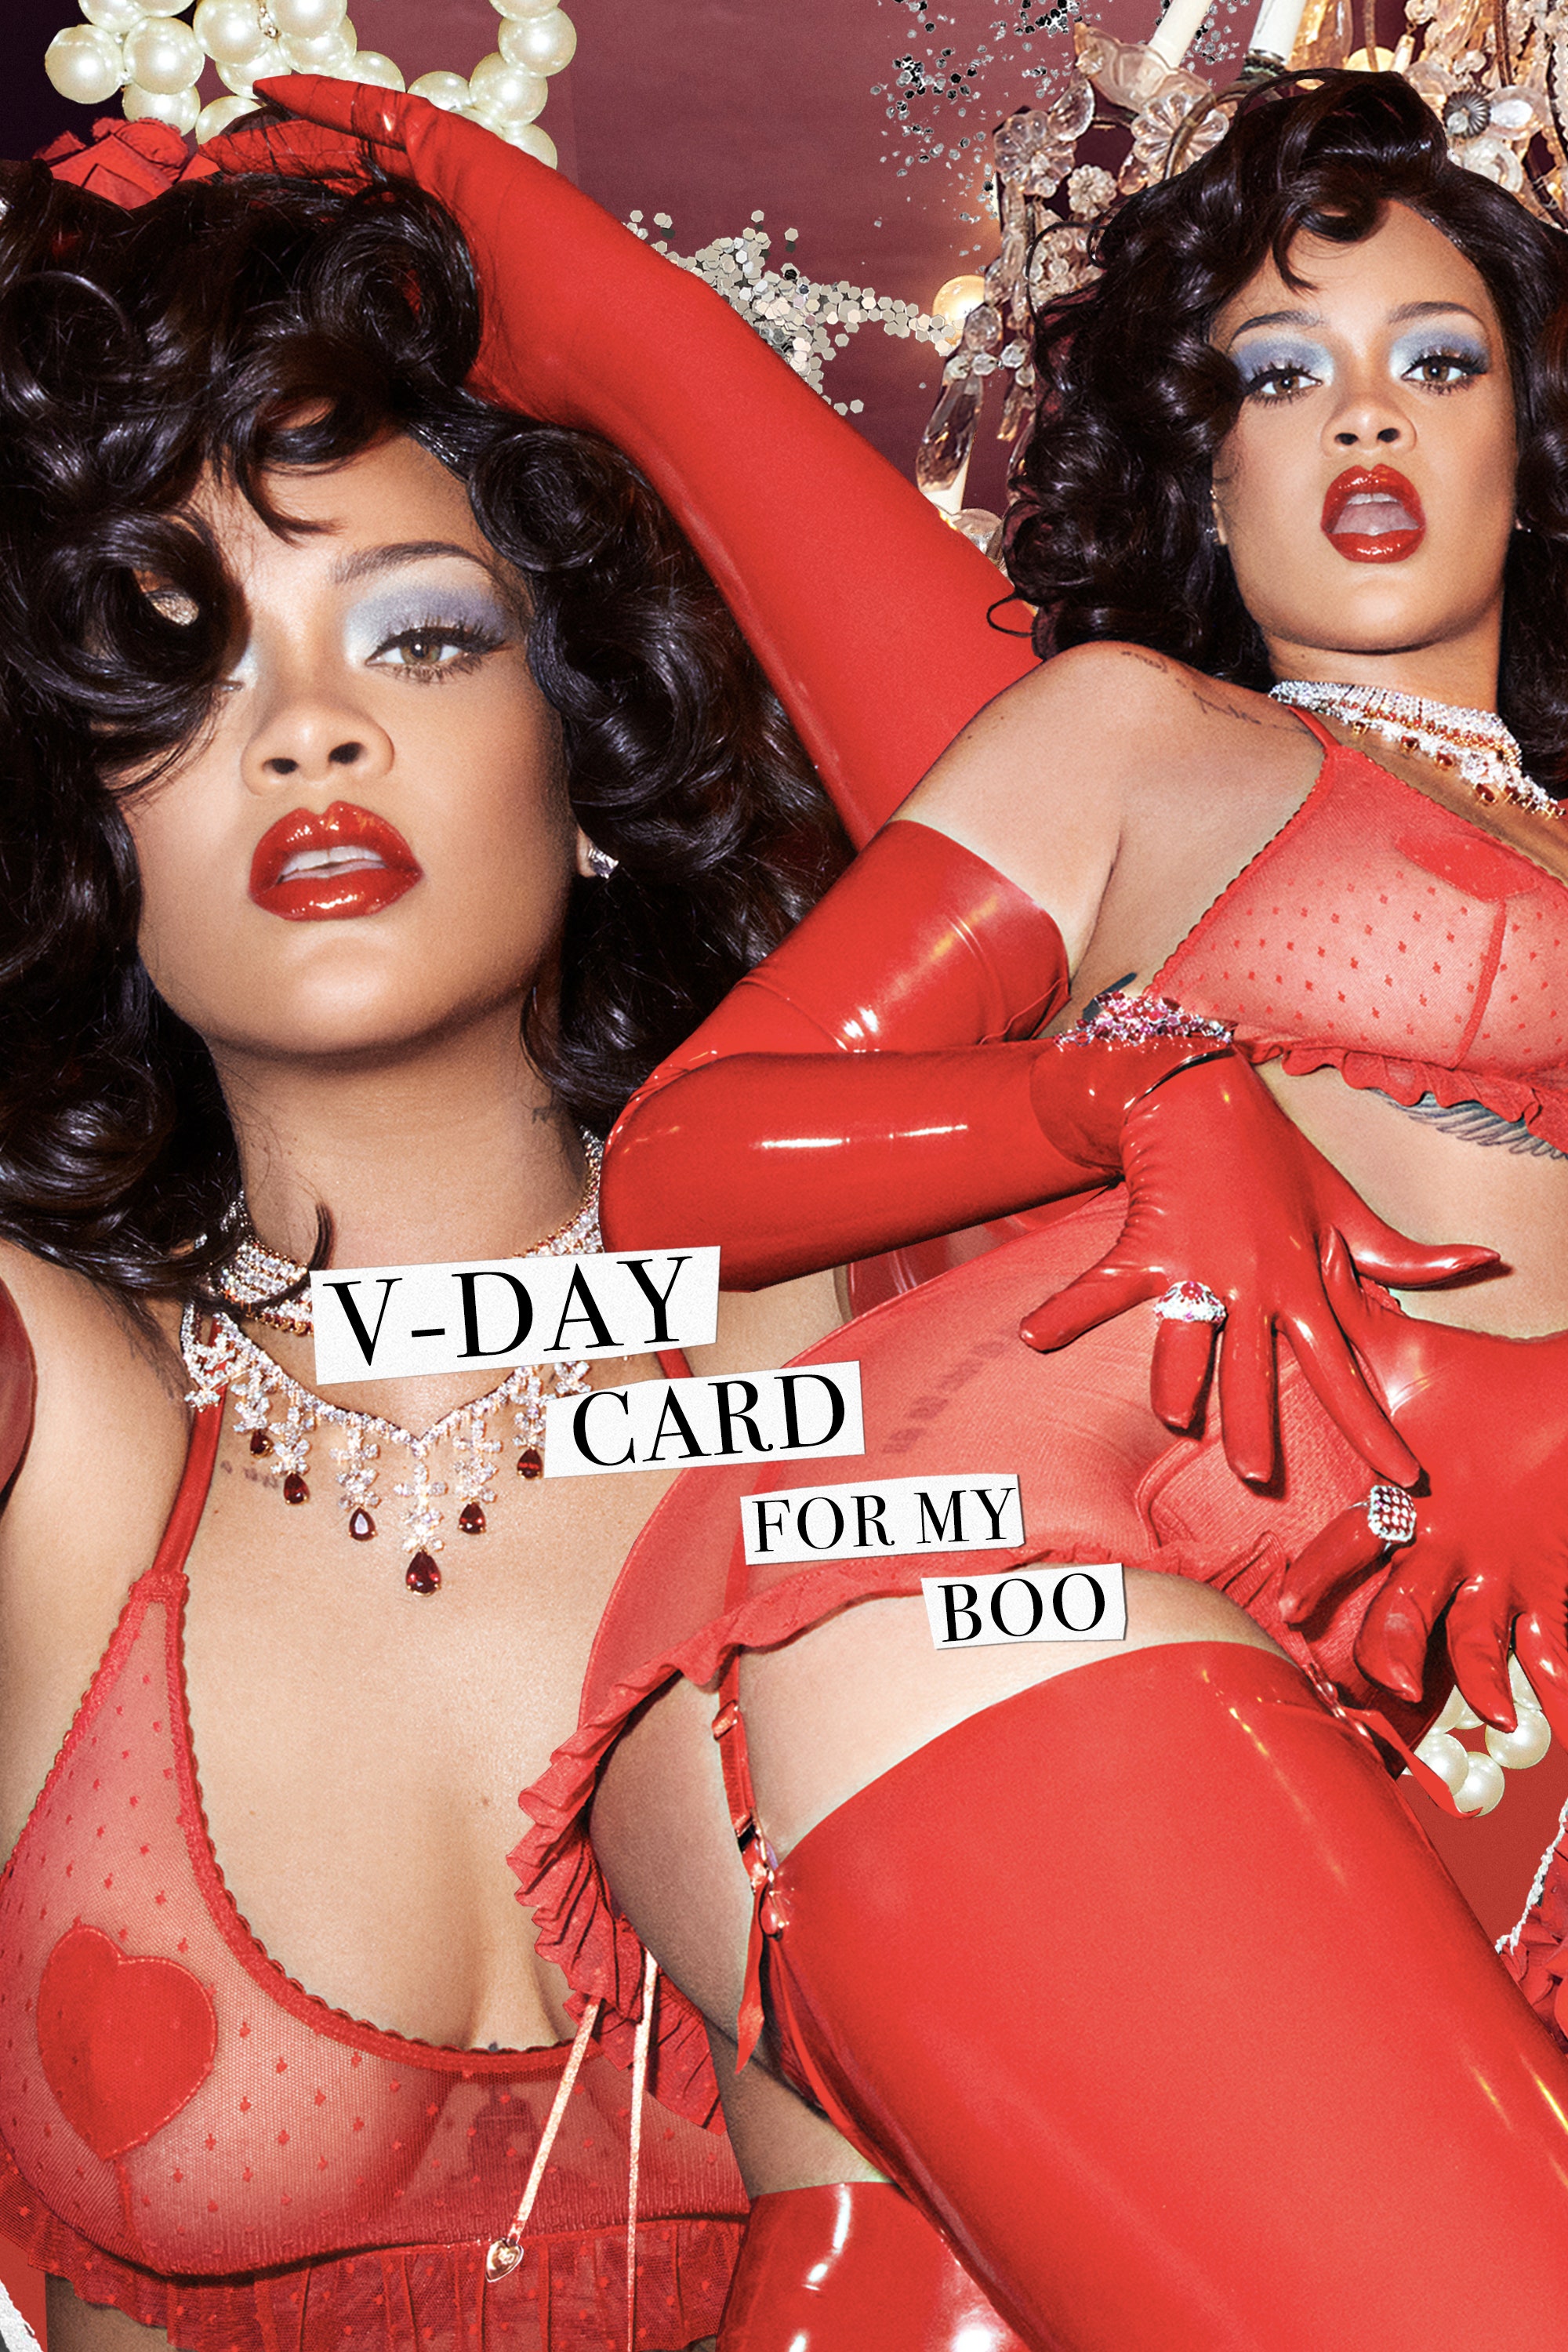 Photo n°5 : Rihanna veut tre votre Saint-Valentin!